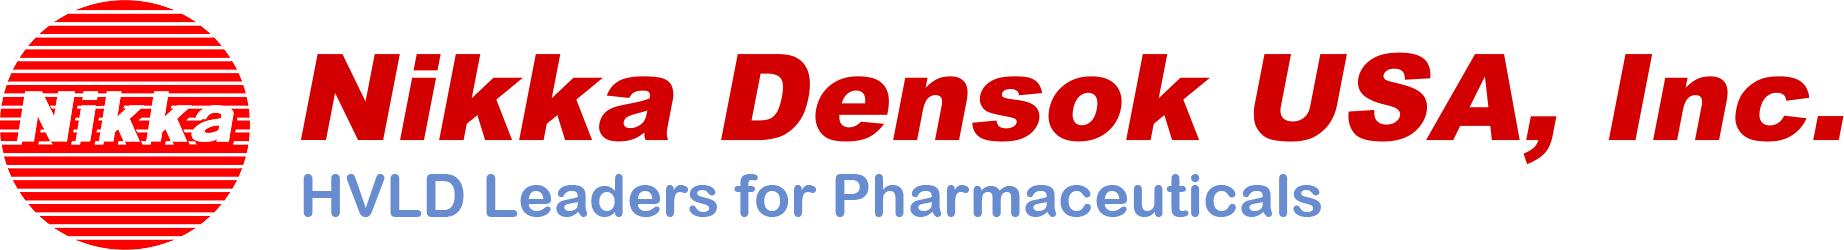 Nikka Densok USA, Inc. HVLD leaders for Pharmaceuticals